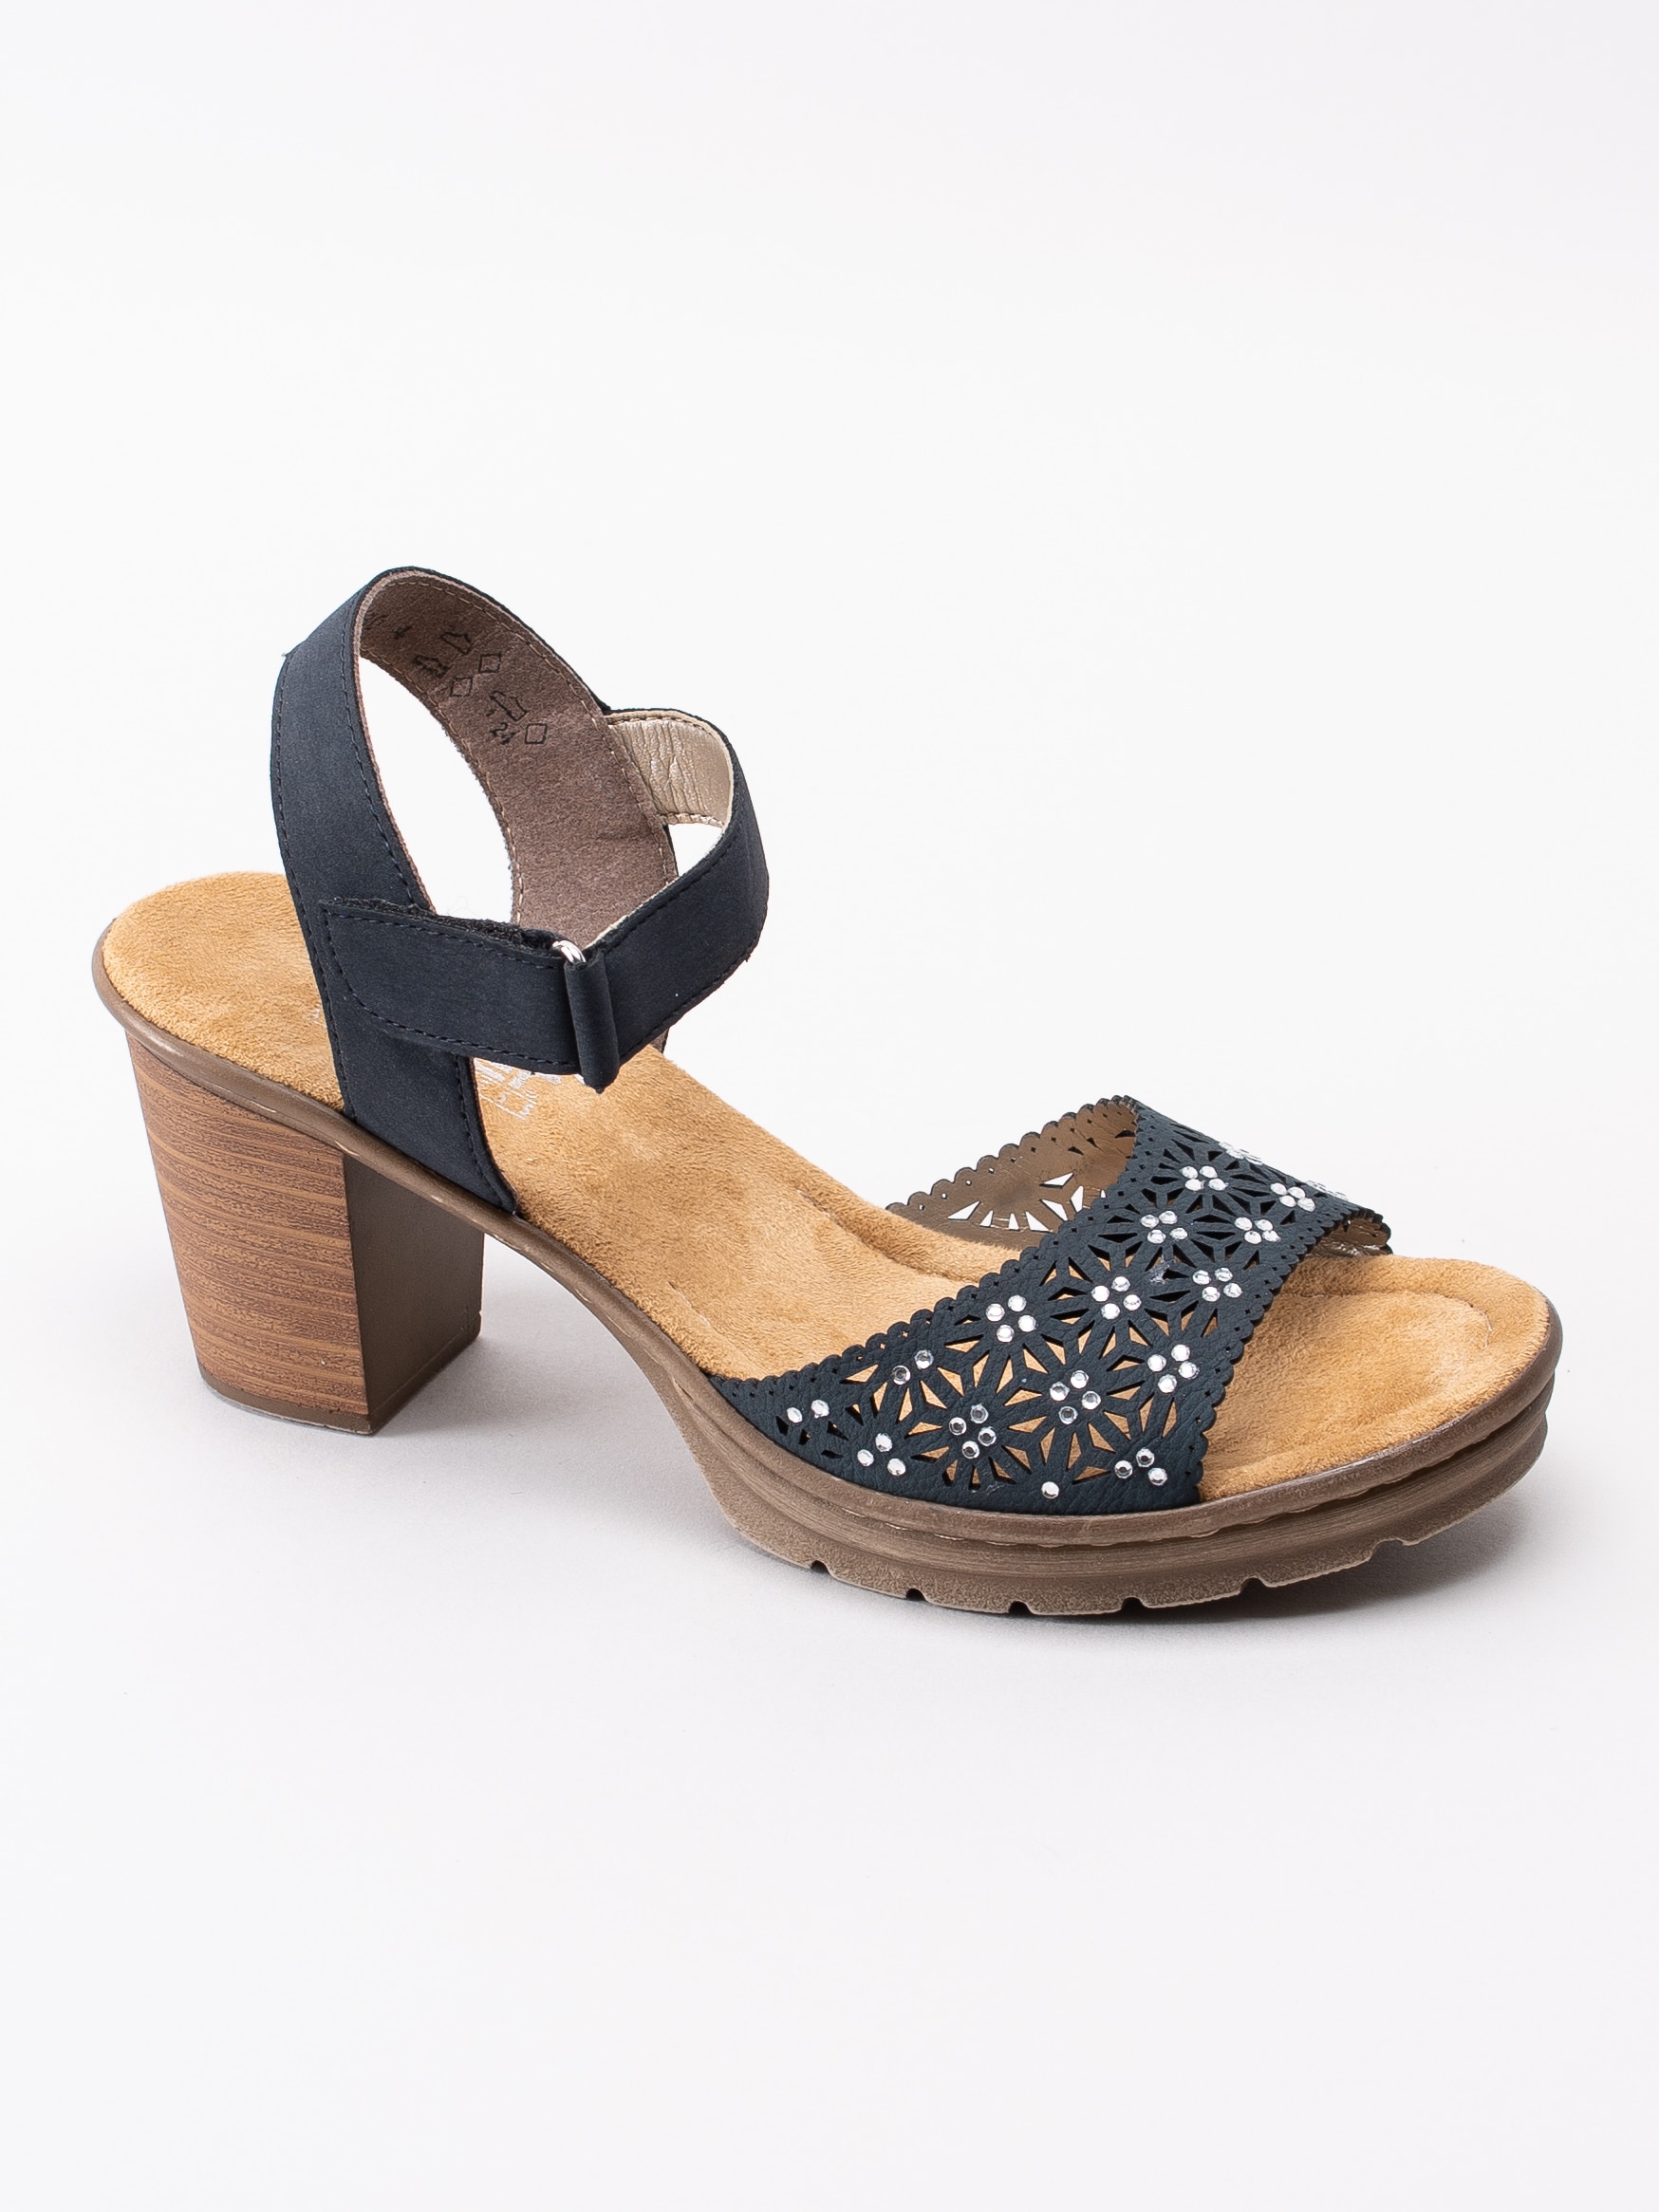 06191085 Rieker V1570-14 mörkblå sandaletter med strasstenar-1